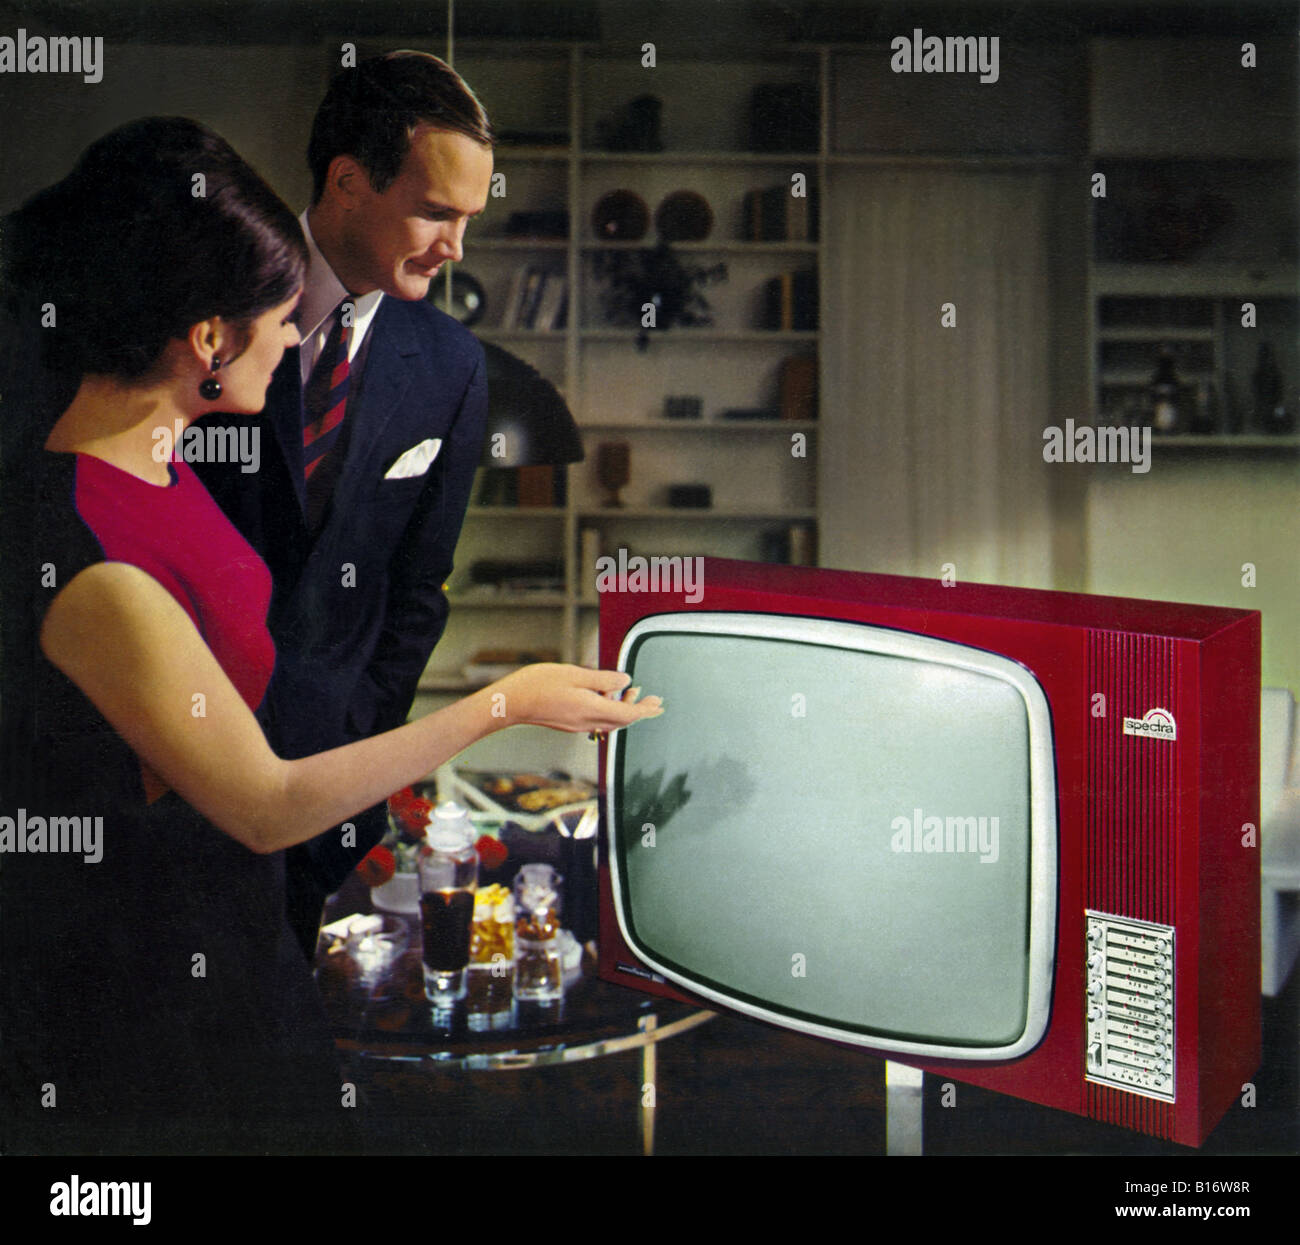 Tv nordmende spectra immagini e fotografie stock ad alta risoluzione - Alamy